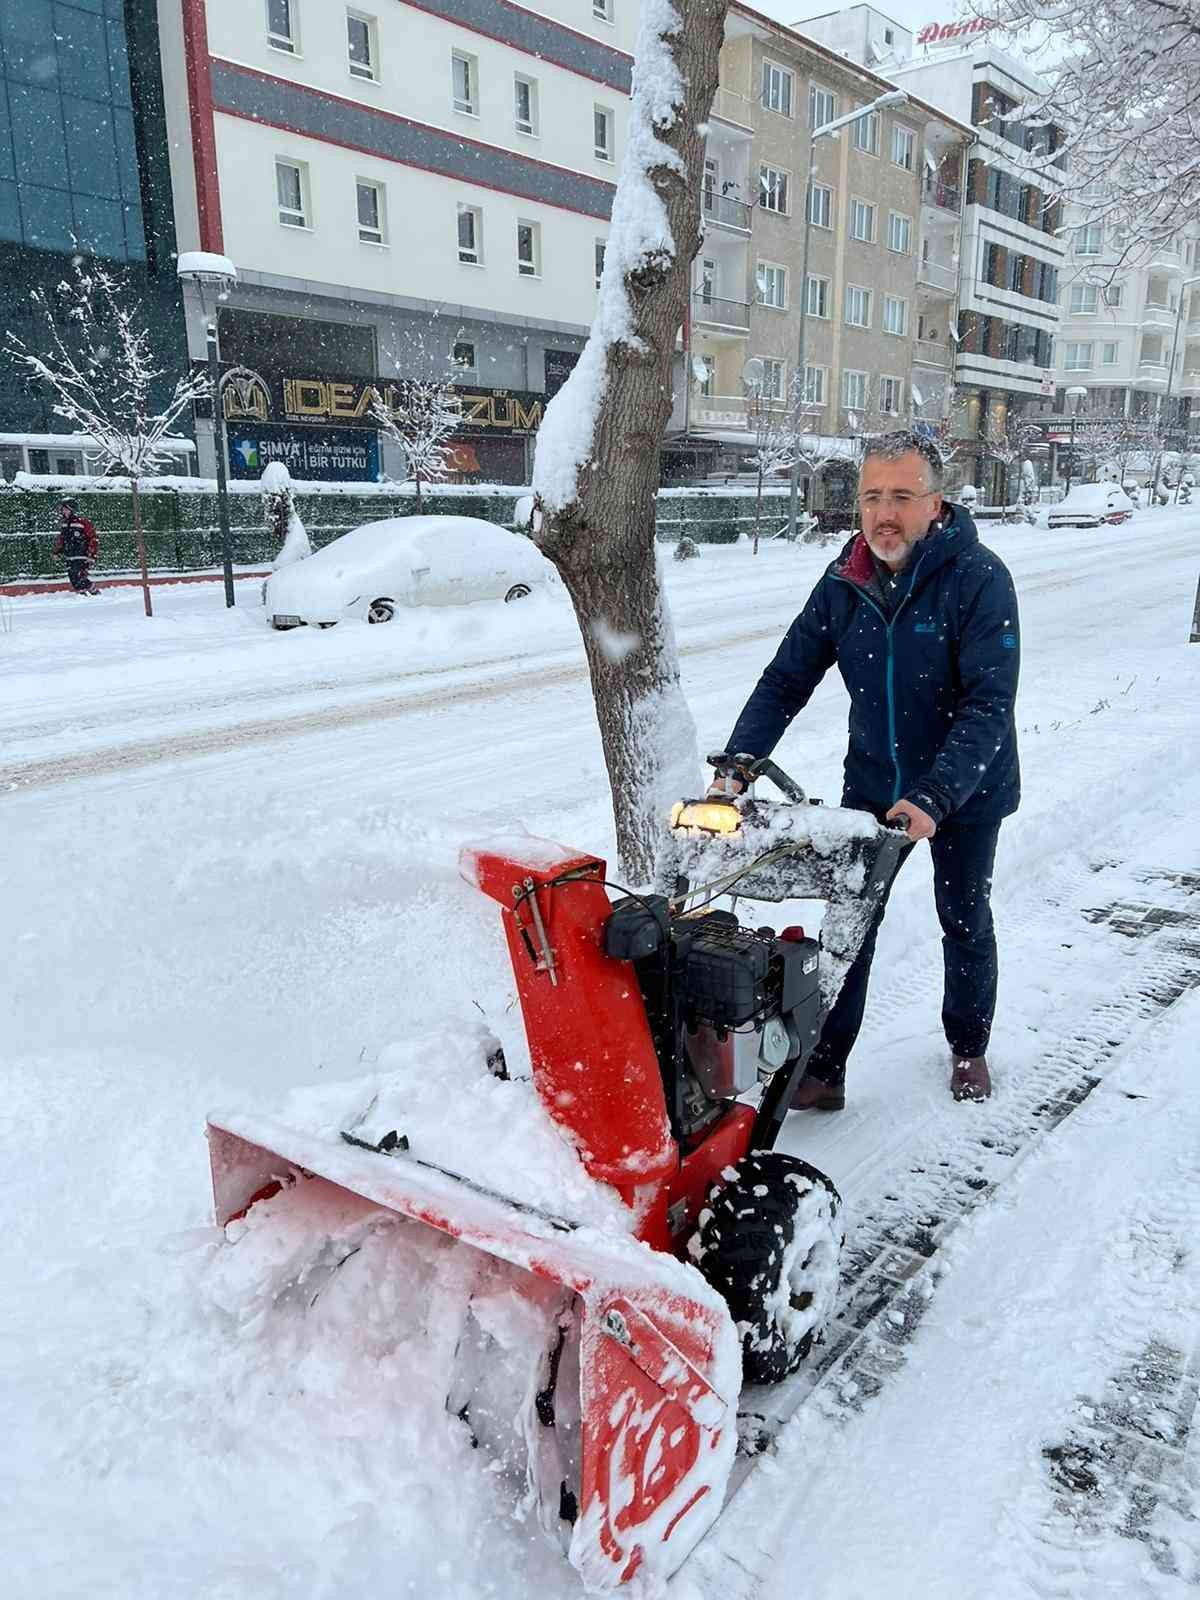 Nevşehir Belediyesi tüm ekipleri ile sahada çalışmalarını sürdürüyor #nevsehir